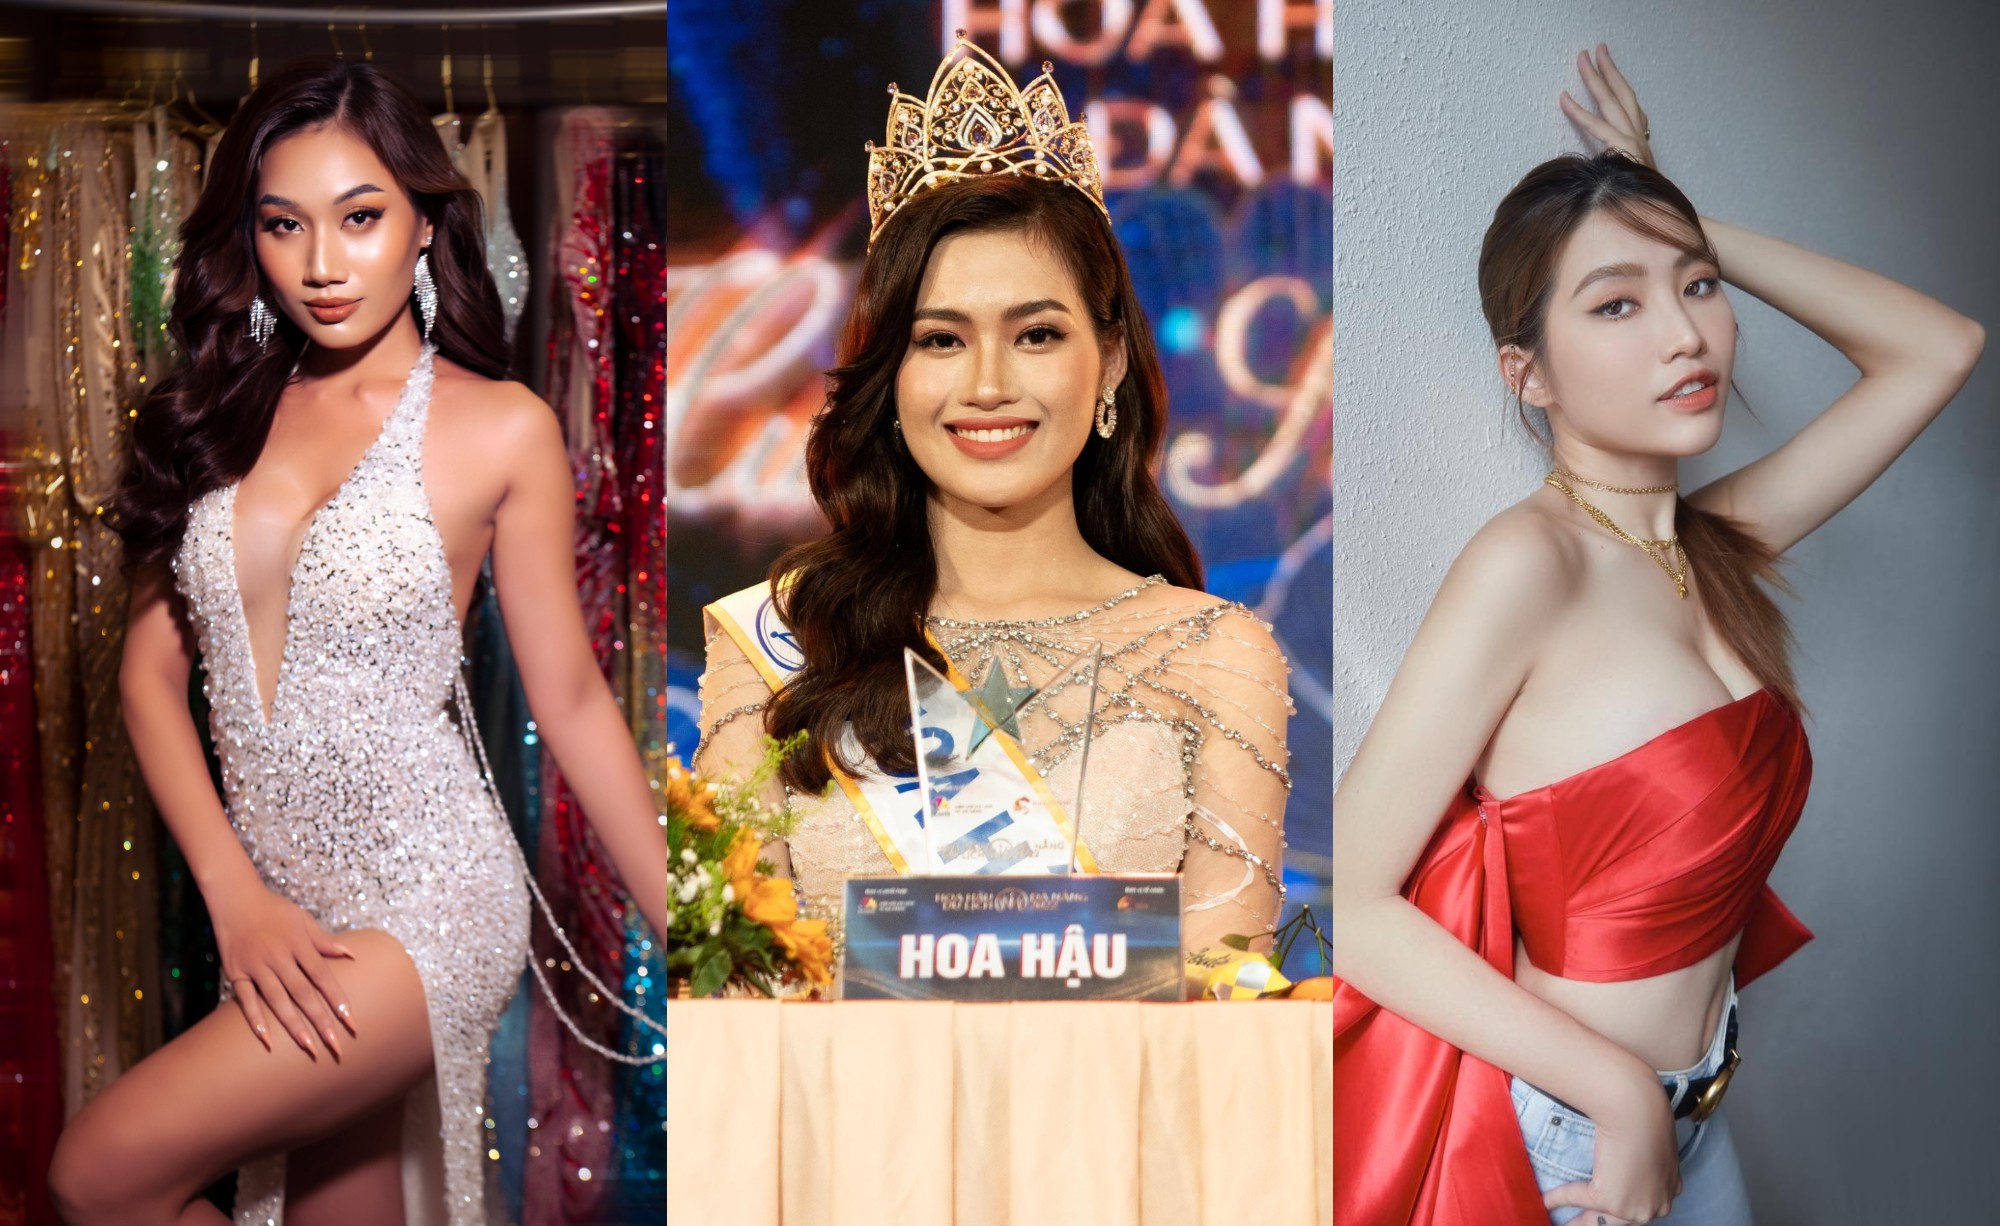 Miss Grand Vietnam 2022: Chào mừng đến với đấu trường sắc đẹp Miss Grand Vietnam 2022! Hãy cùng nhìn ngắm những cô gái xinh đẹp, thông minh và tự tin khi đăng quang chiếc vương miện cao quý nhất. Họ là những gương mặt tiêu biểu của nhan sắc Việt Nam, hứa hẹn sẽ mang lại những giây phút đầy cảm hứng và sự cảm động cho khán giả.